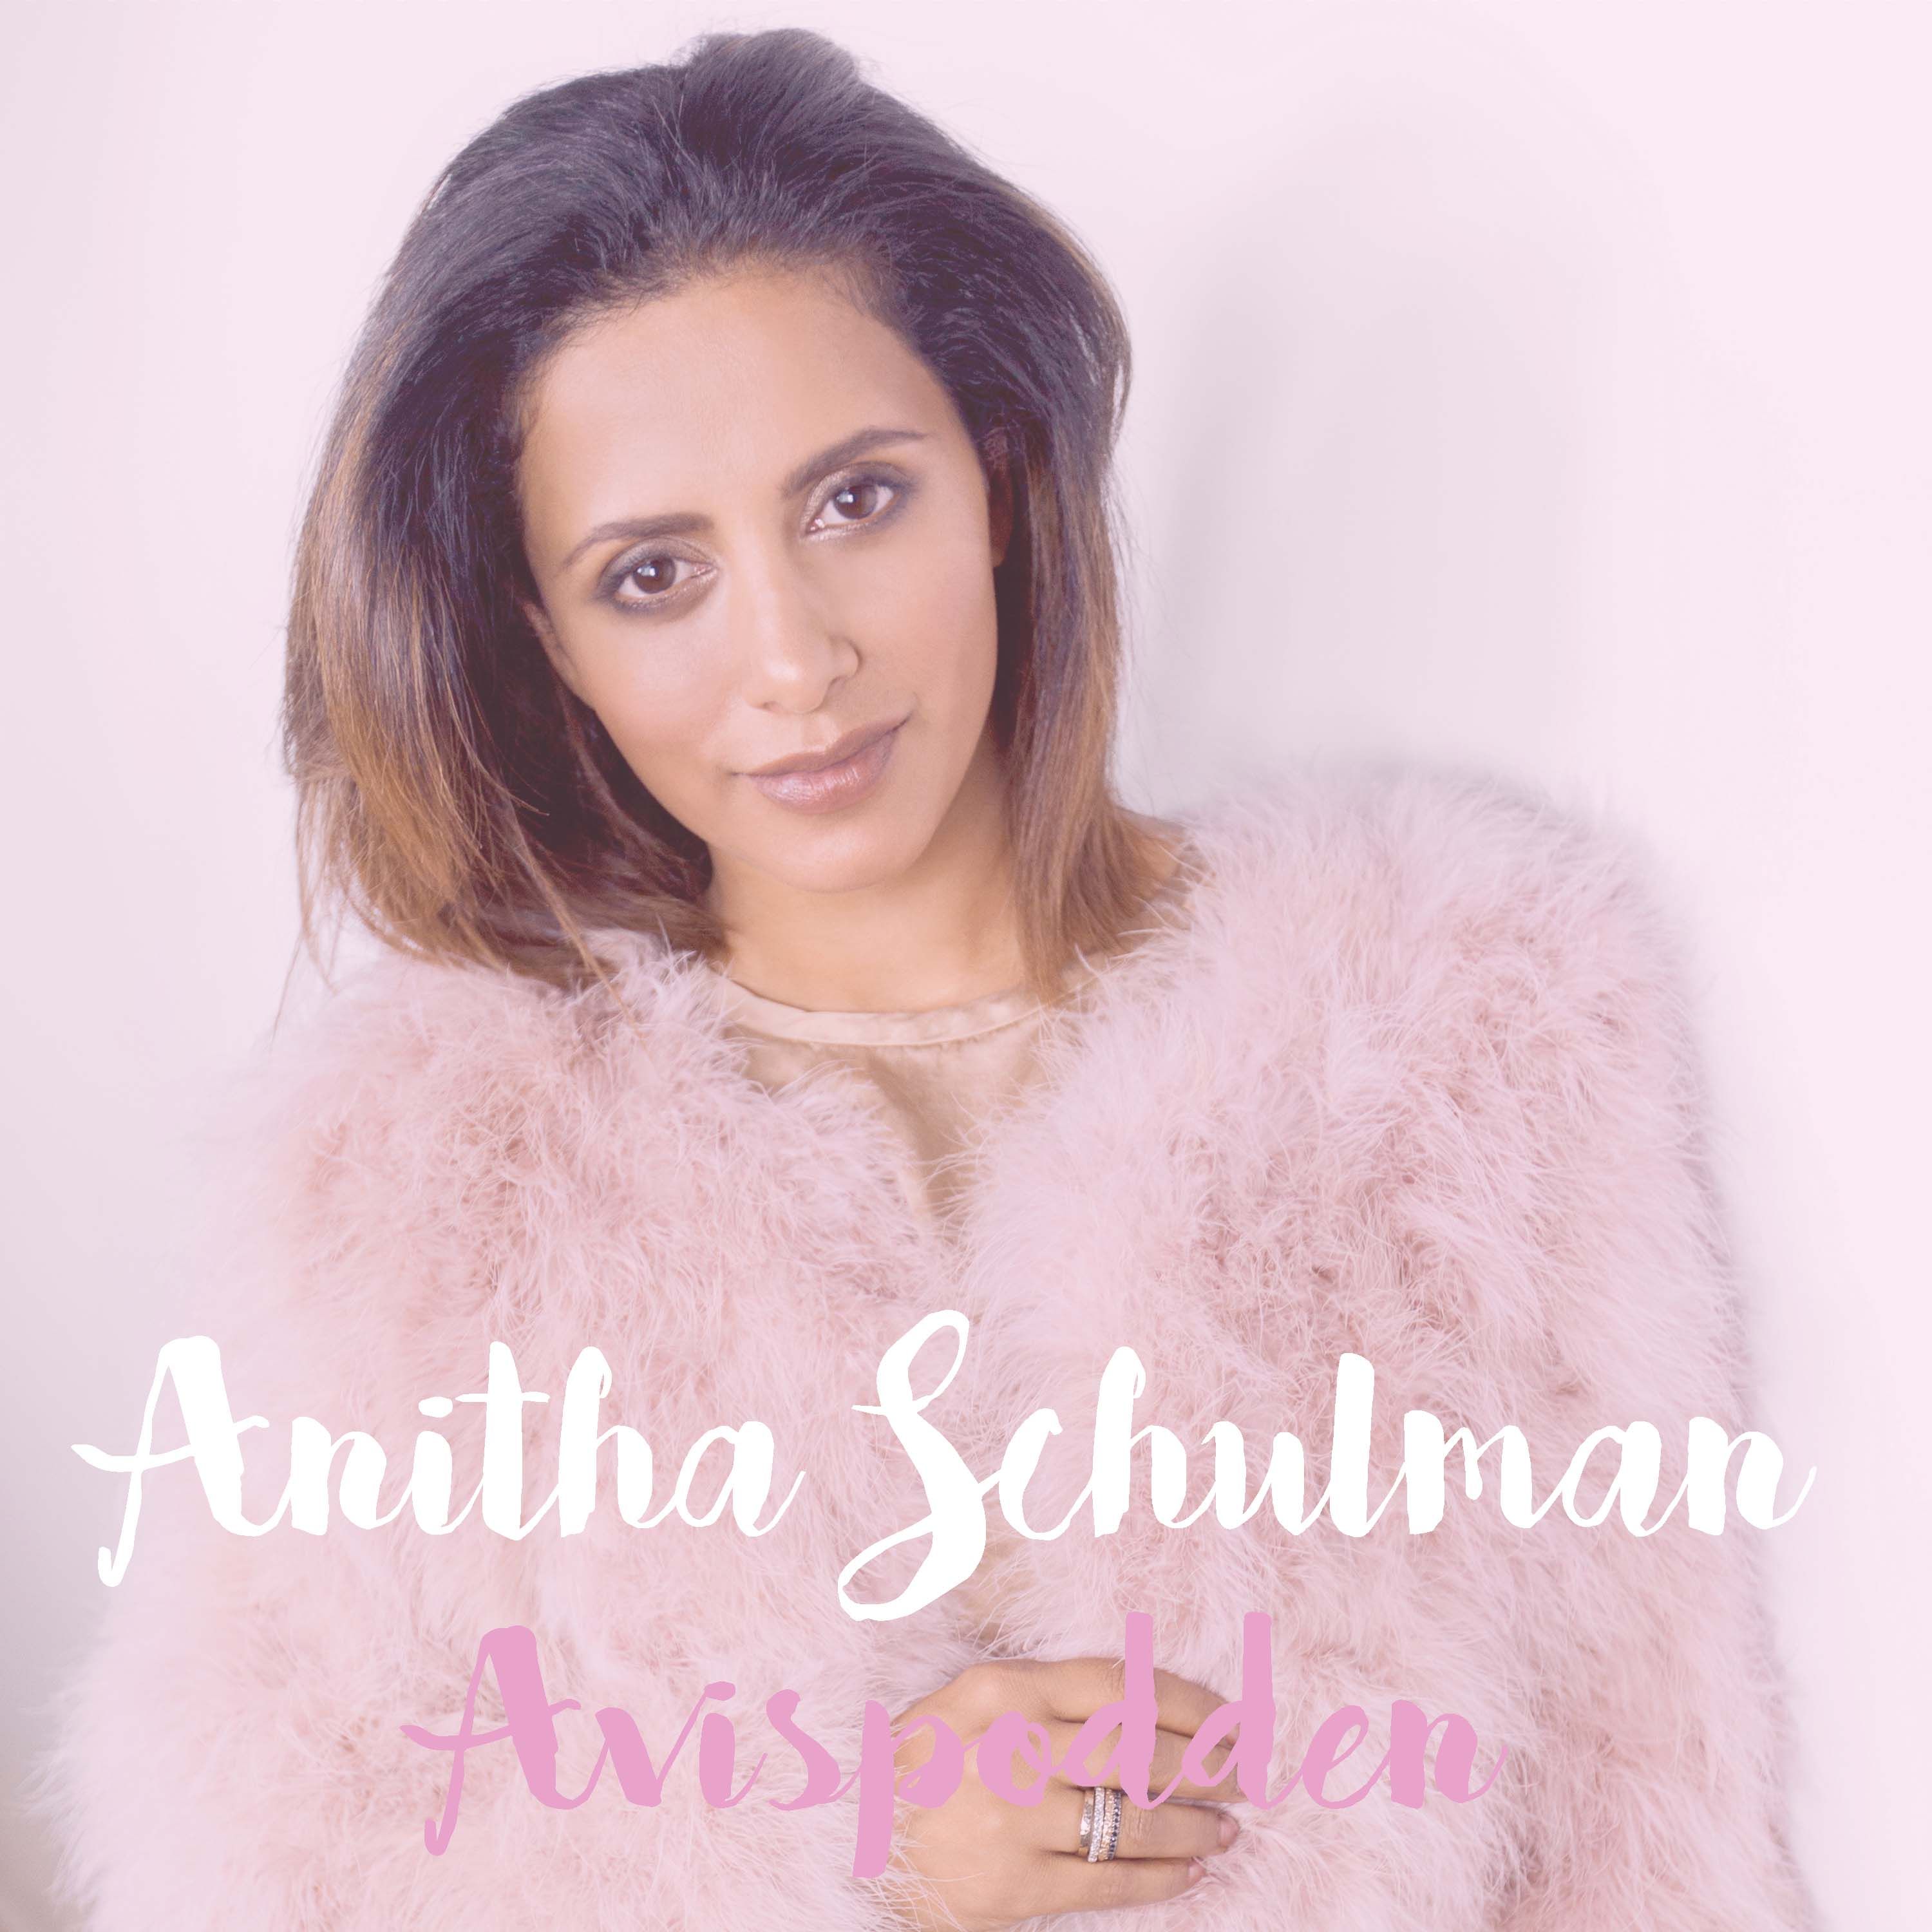 cover art for 5. Anitha Schulman "Det som var jobbigt då kan jag kapitalisera på nu"